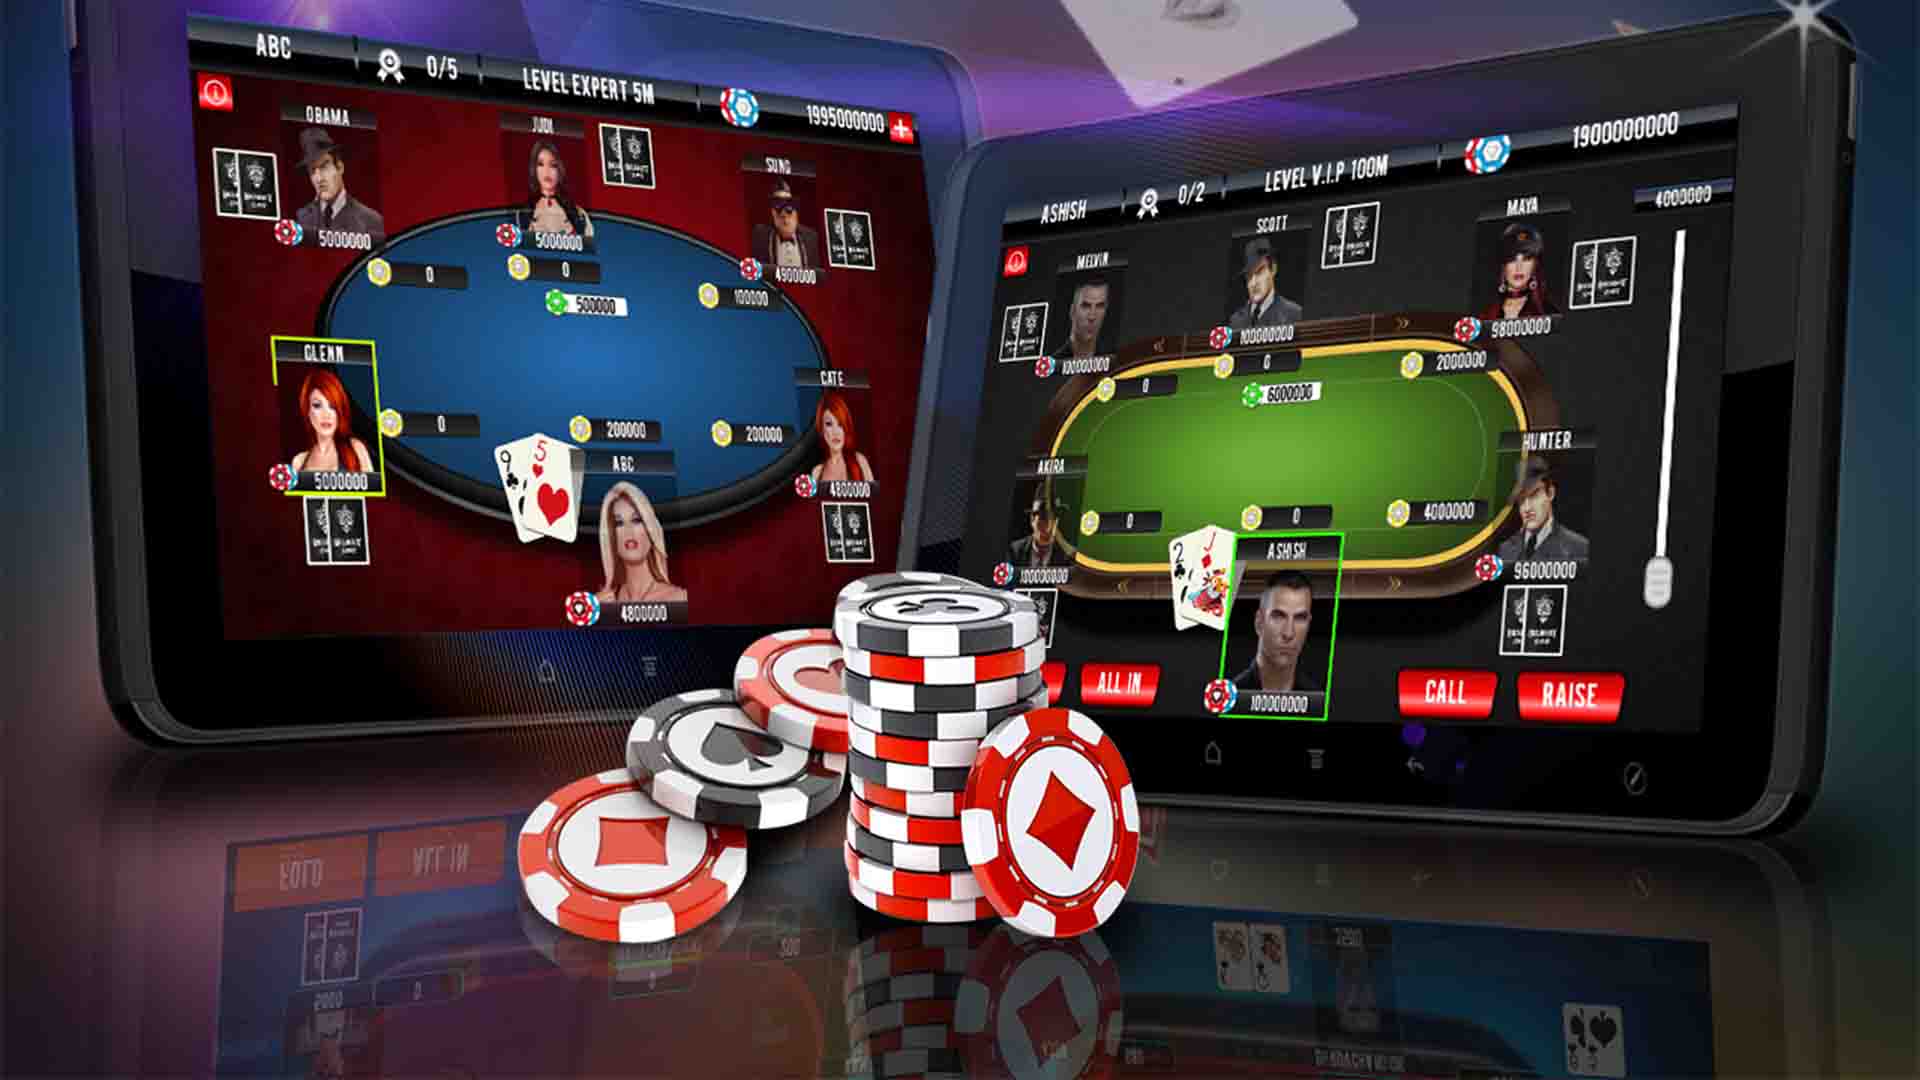 Understand Poker by Learning Poker Online